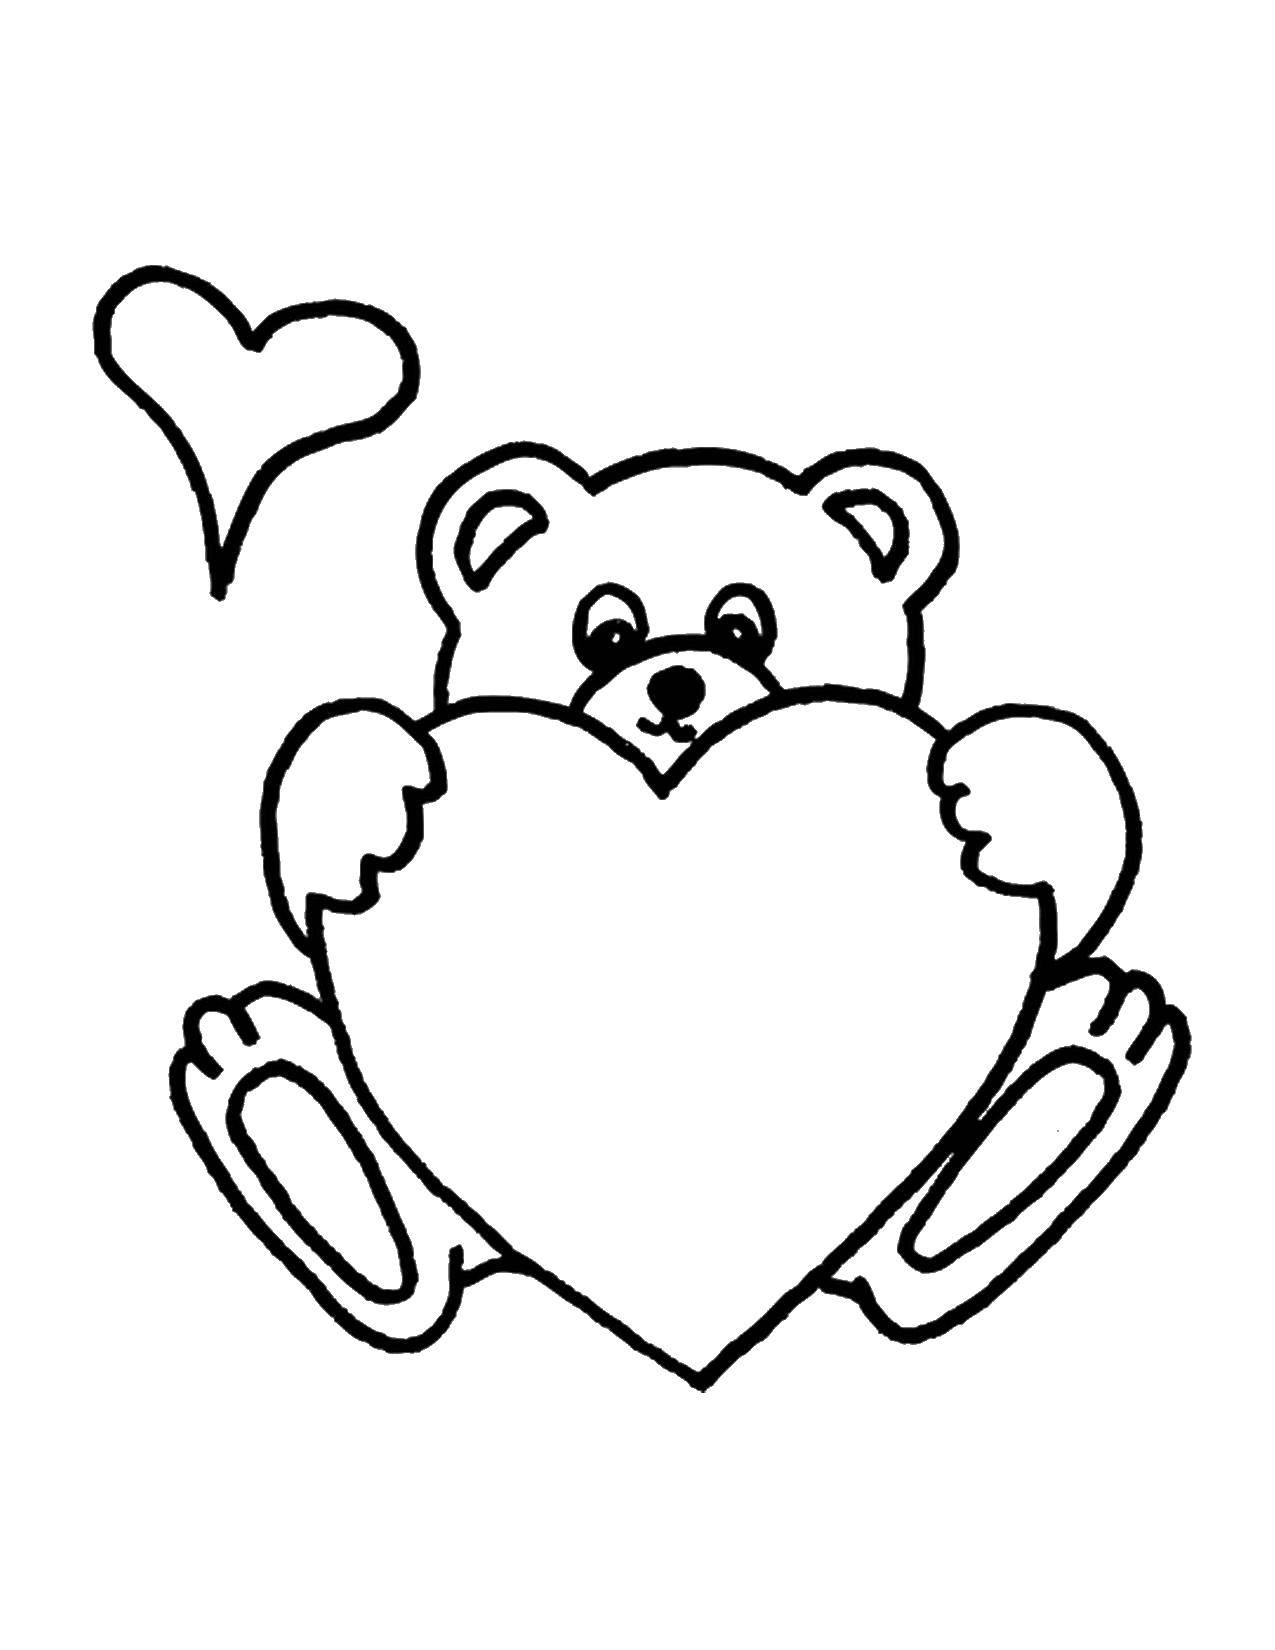 Coloring Bear and heart. Category Hearts. Tags:  bear, hearts, love.